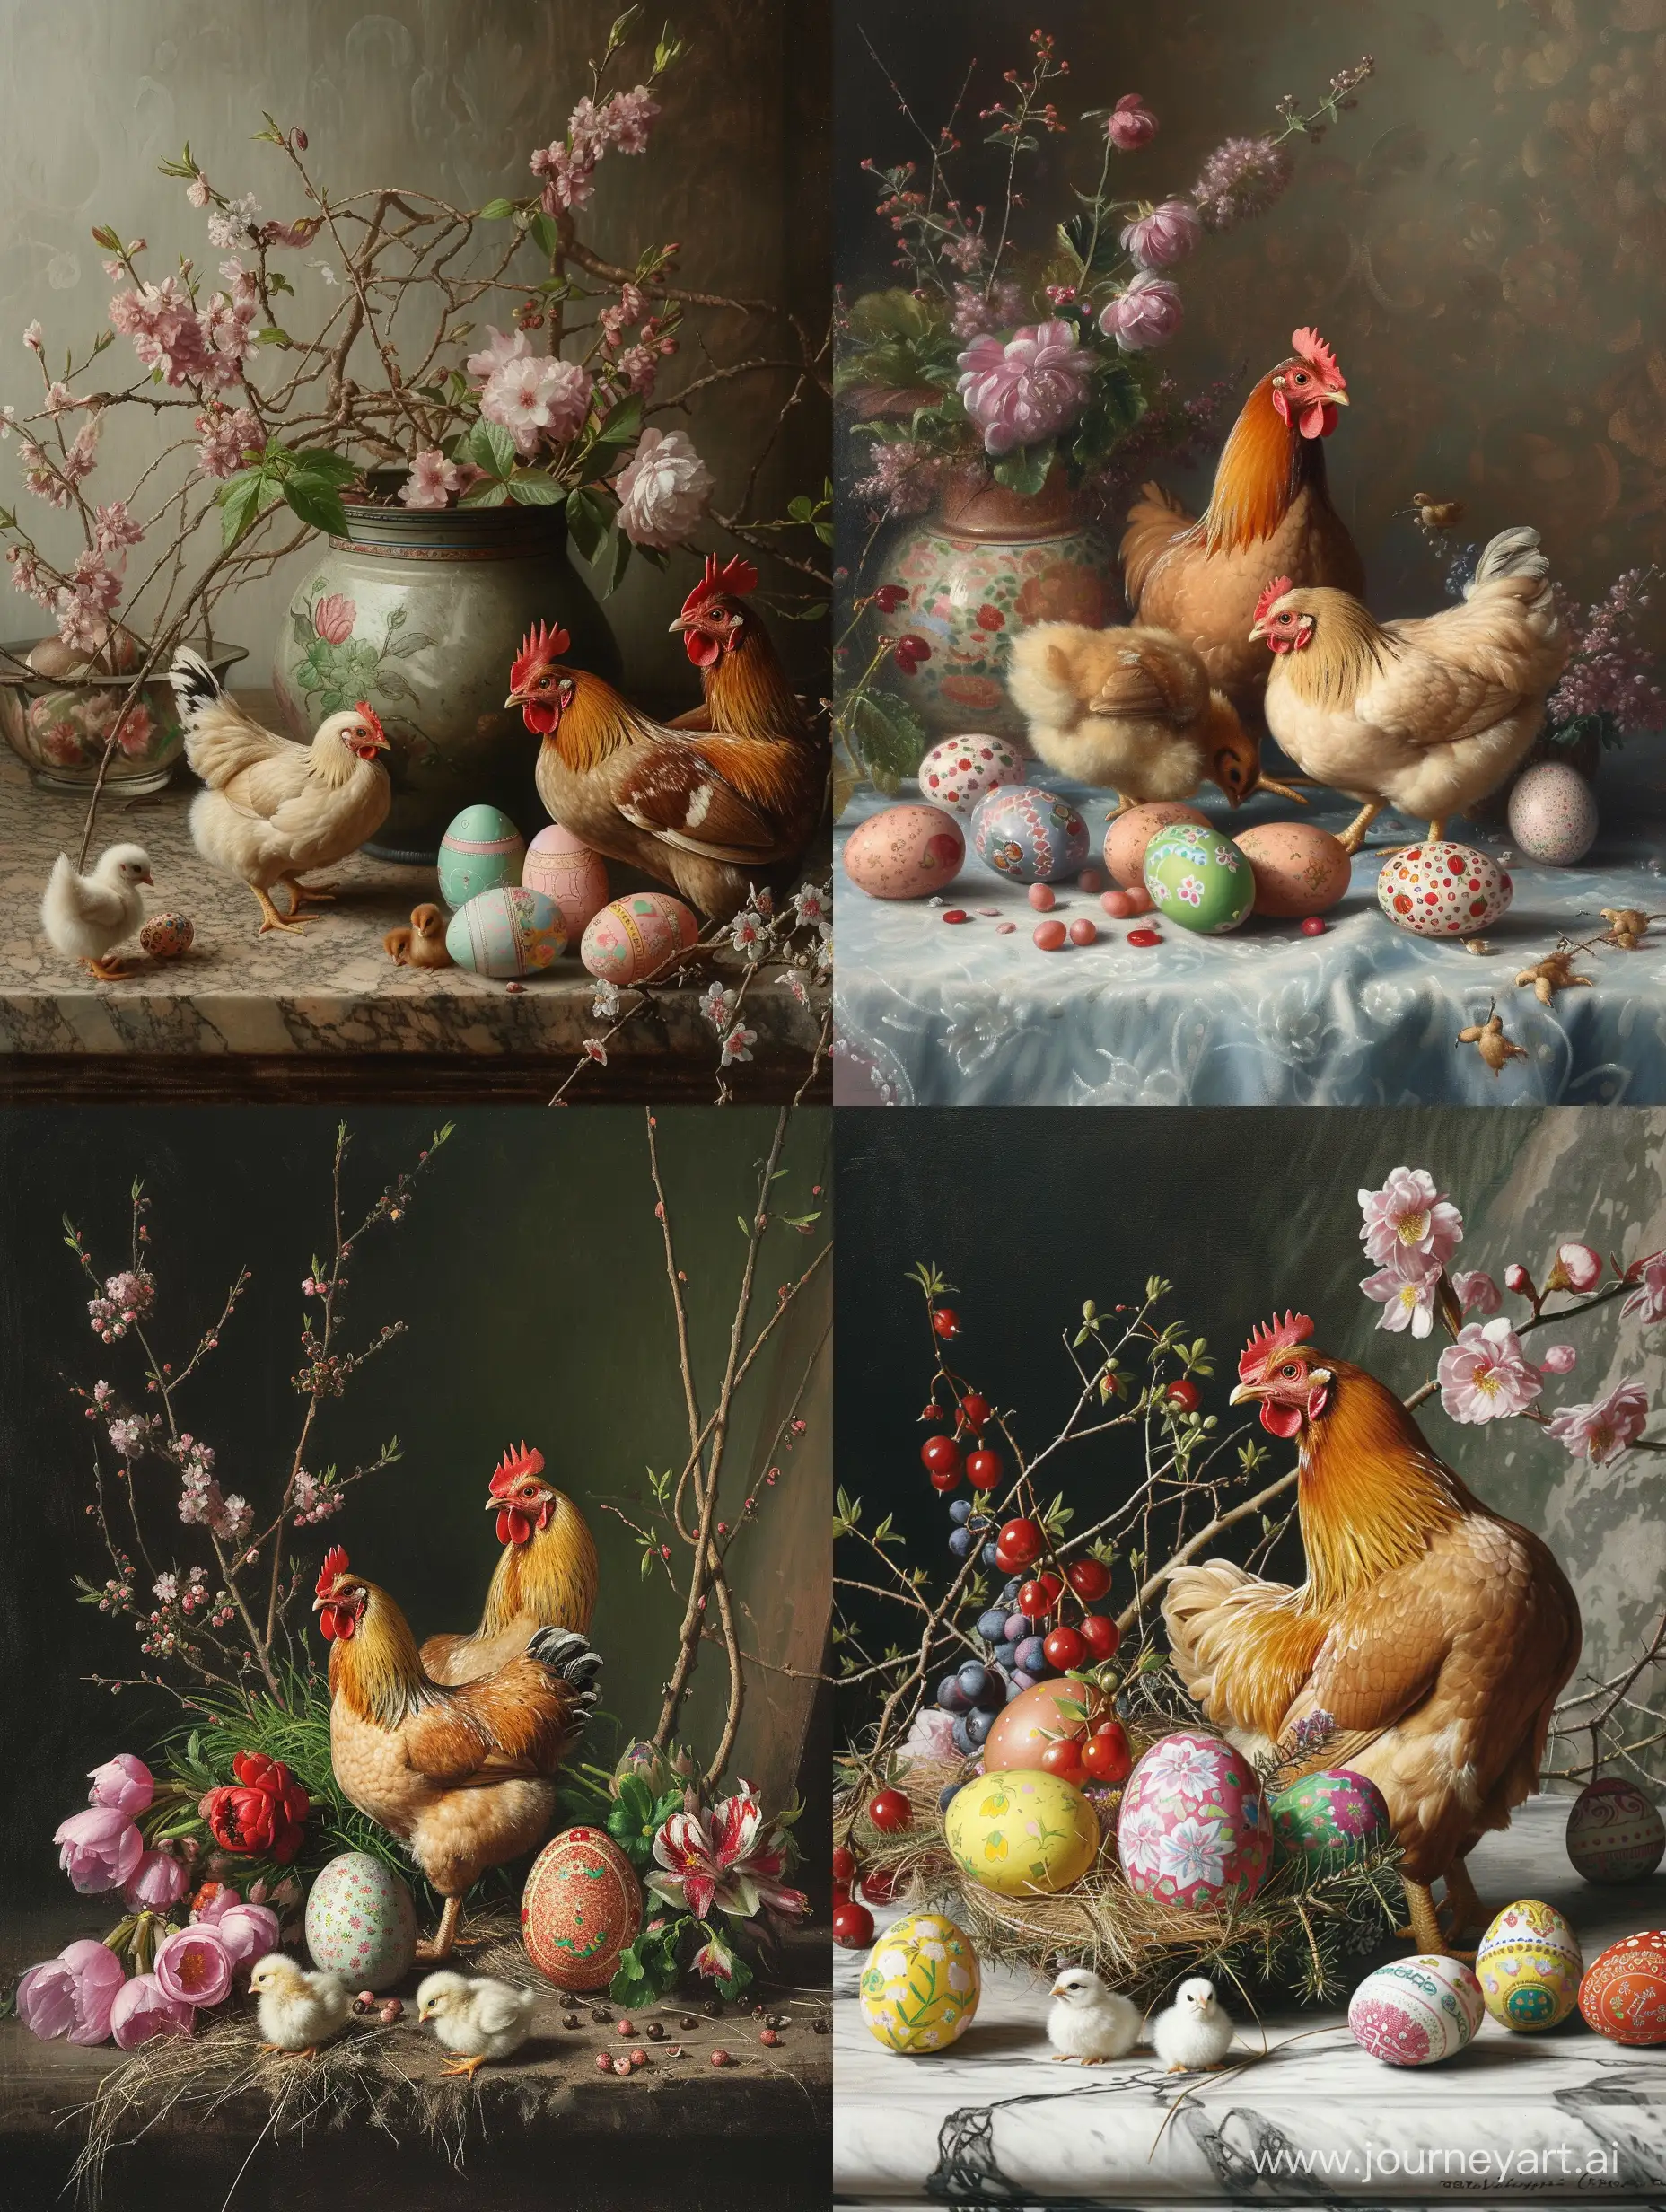 Натюрморт с курицей, цыплятами и пасхальными яйцами. Стиль рисунка российских художников 19 века. Масляная живопись. 